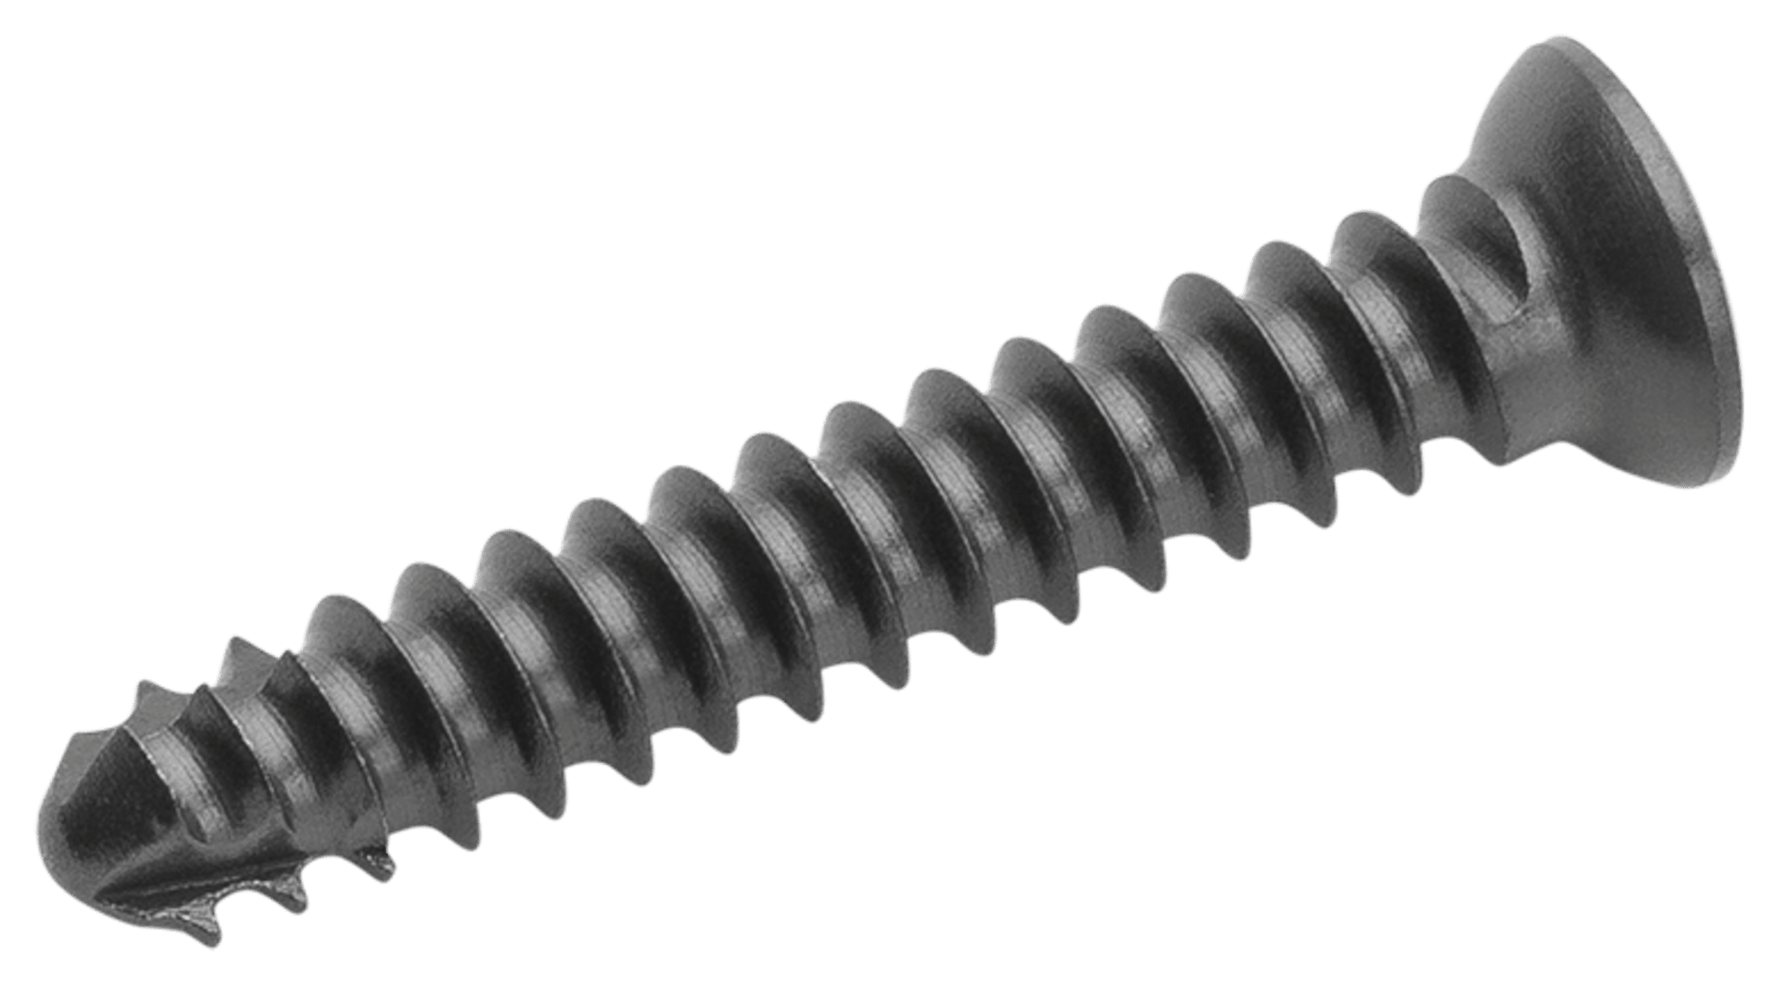 Cortical Screw, 2.0 mm x 11 mm